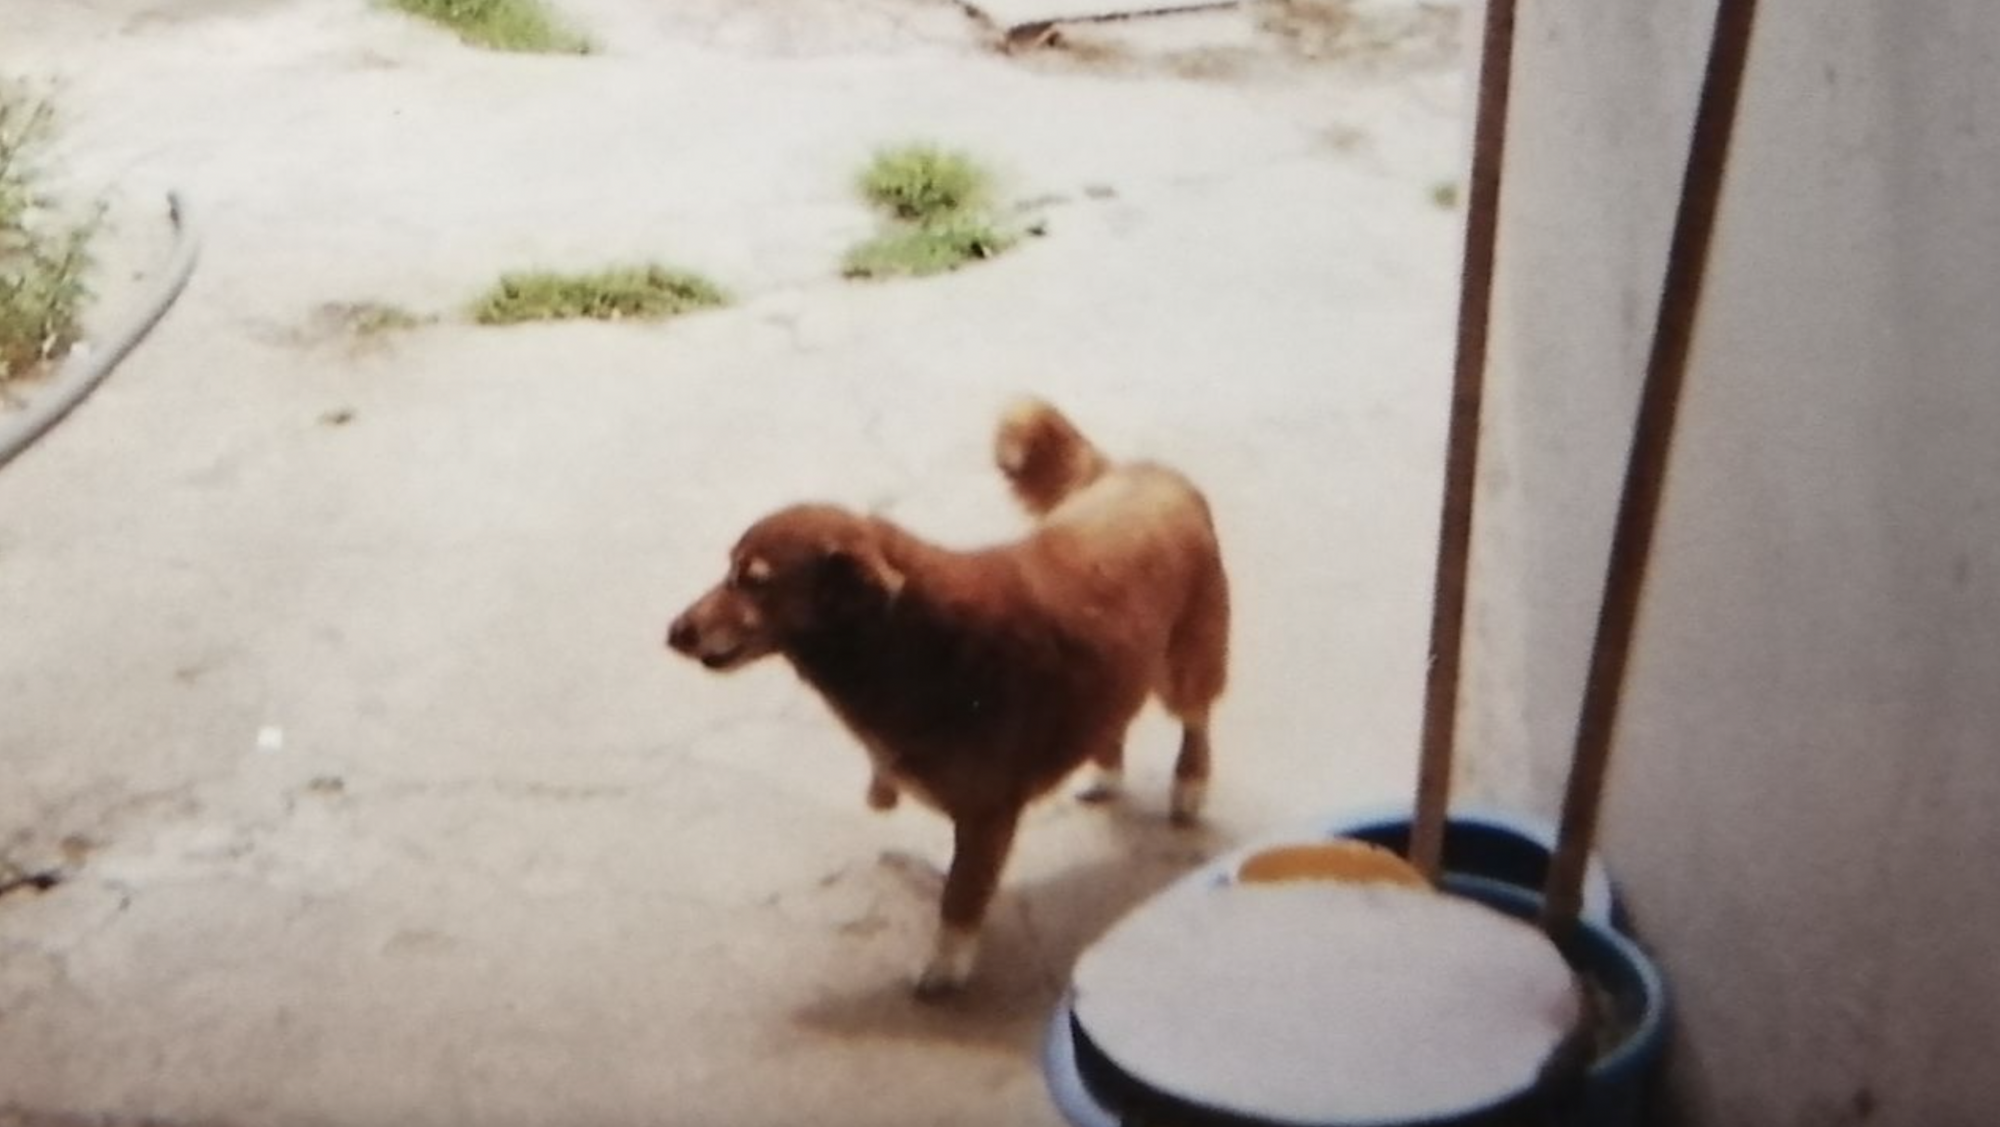 Извини, Спайк: самой старой собакой в мире признан 30-летний Боби из Португалии. Фото